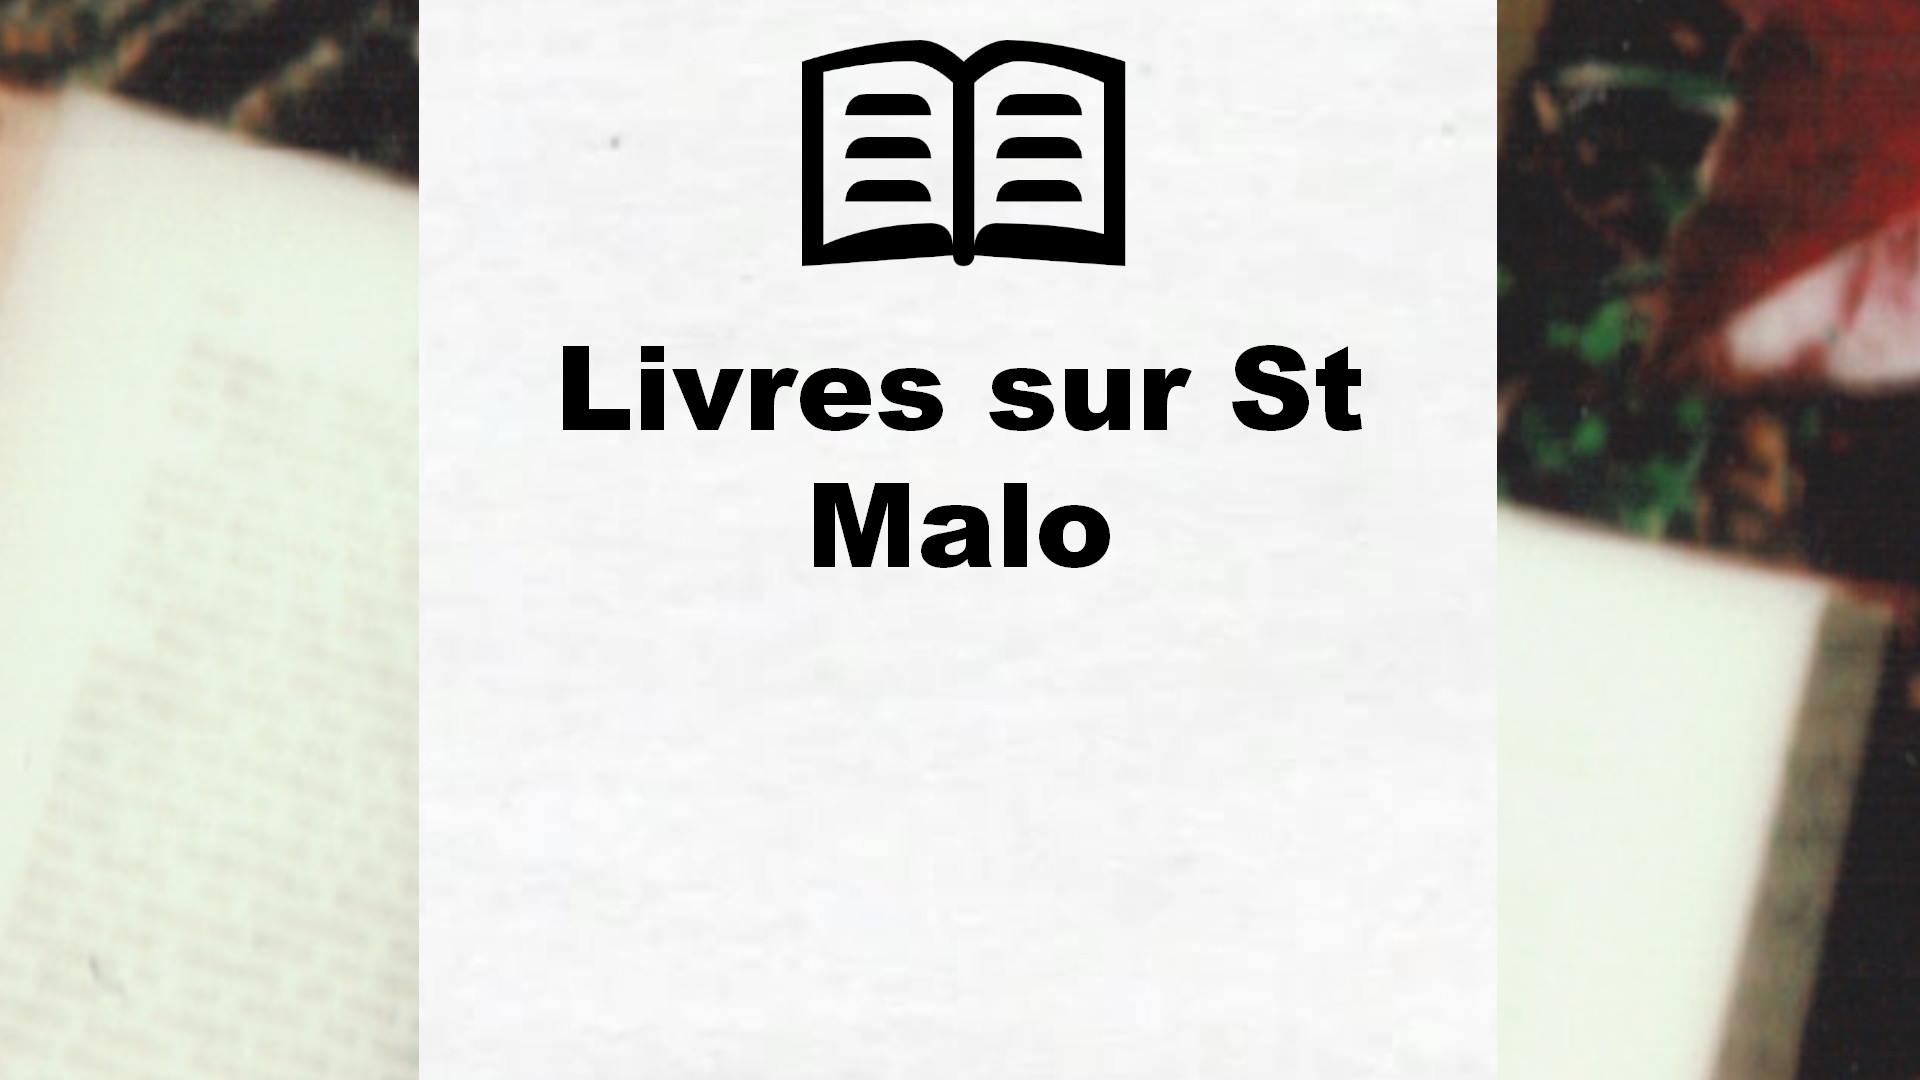 Livres sur St Malo